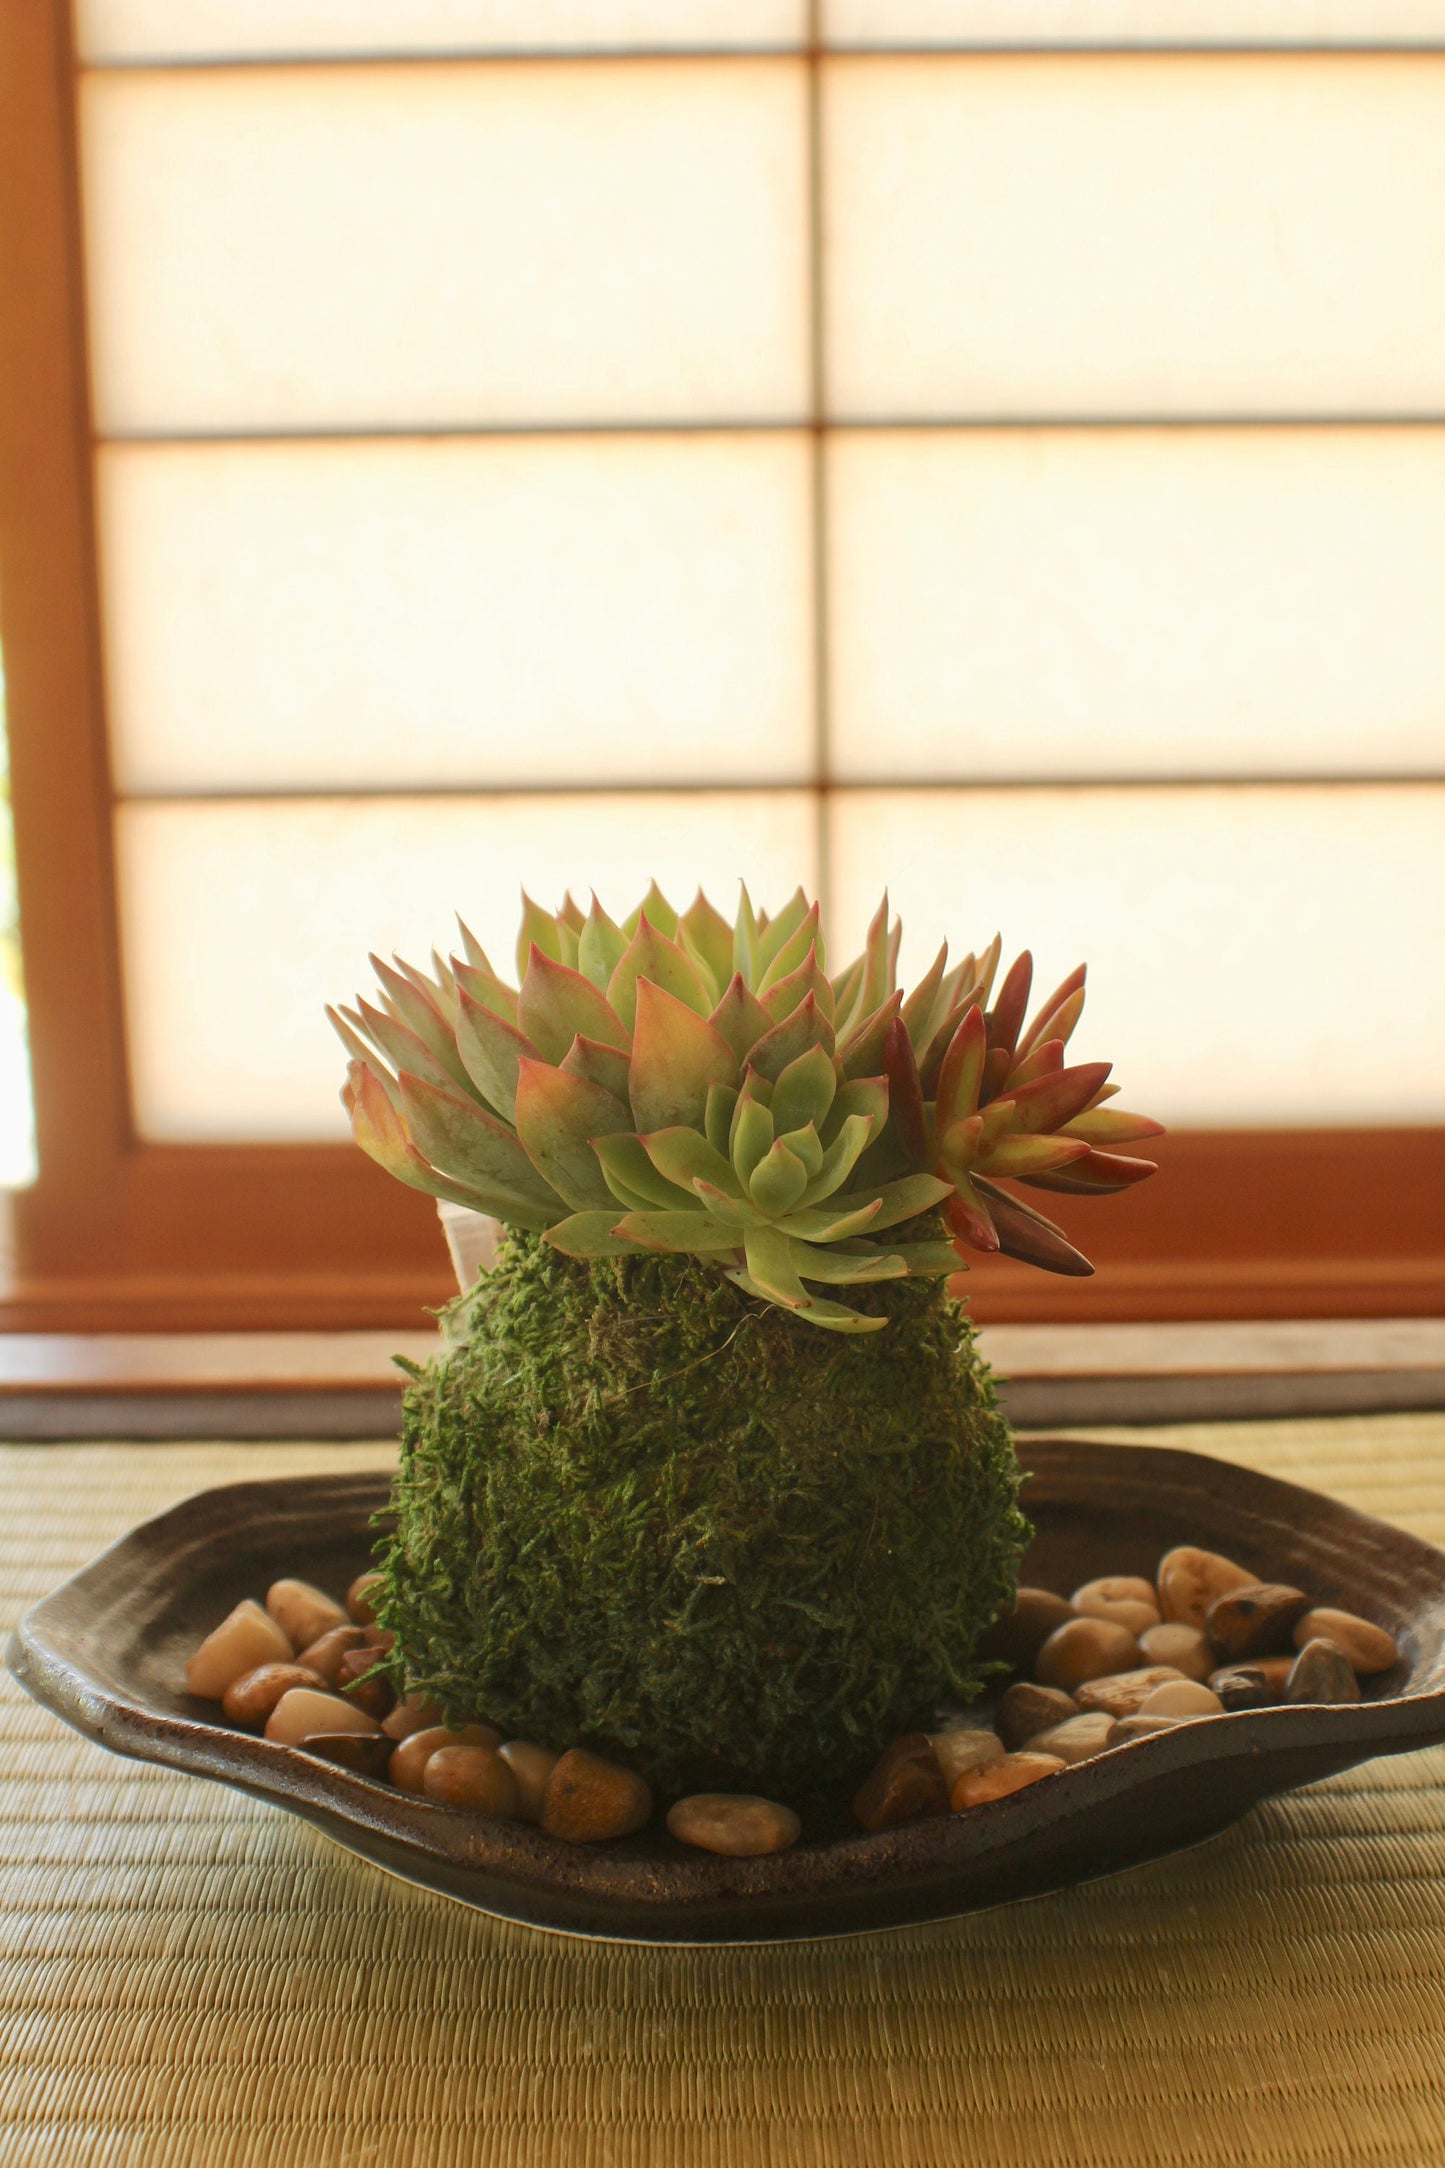 Assorted arranged Succulent Kokedama - Moss ball